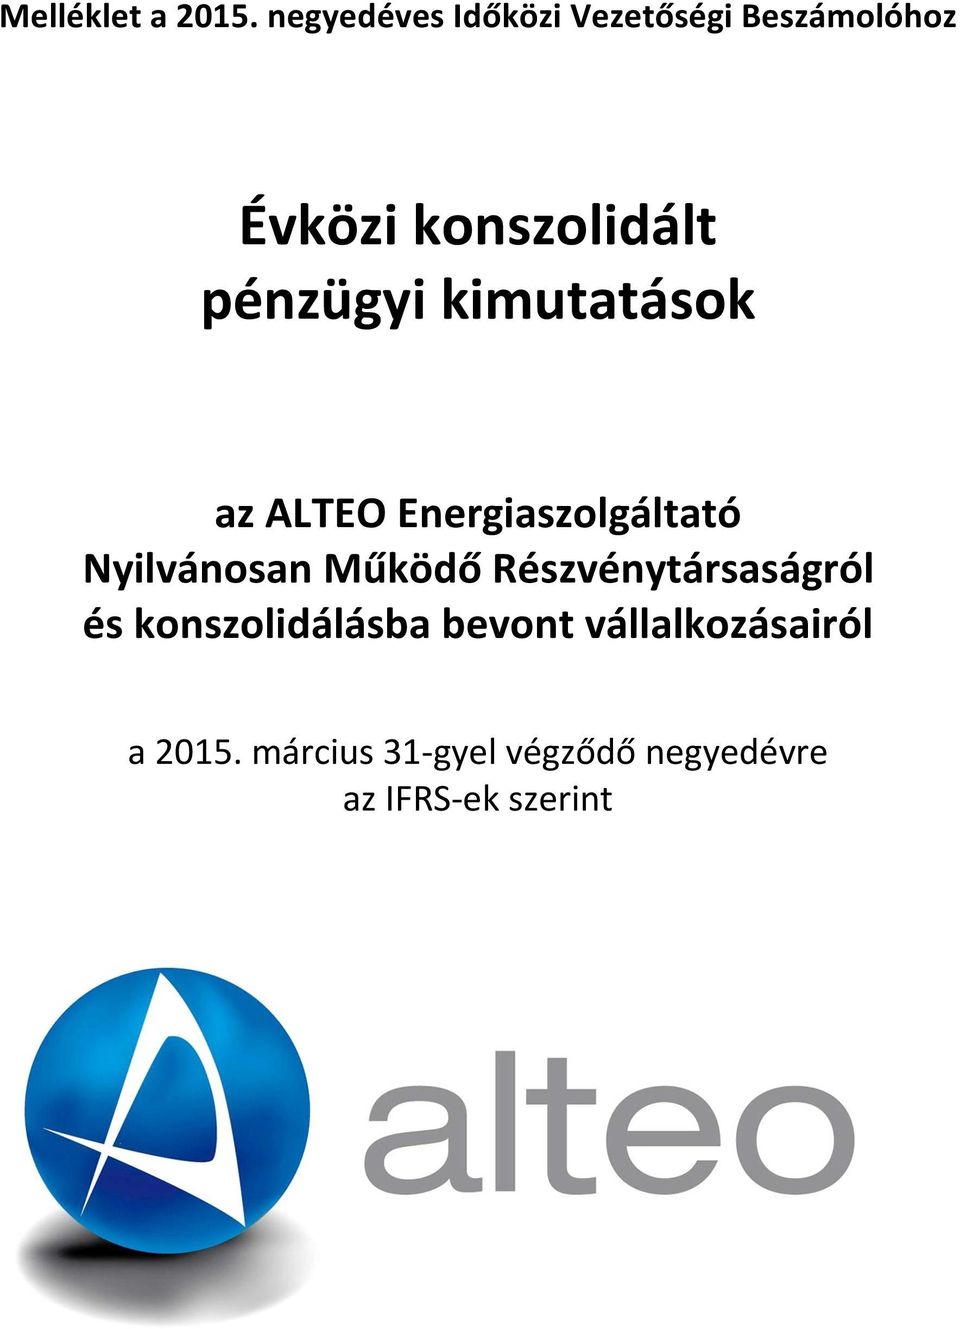 pénzügyi kimutatások az ALTEO Energiaszolgáltató Nyilvánosan Működő